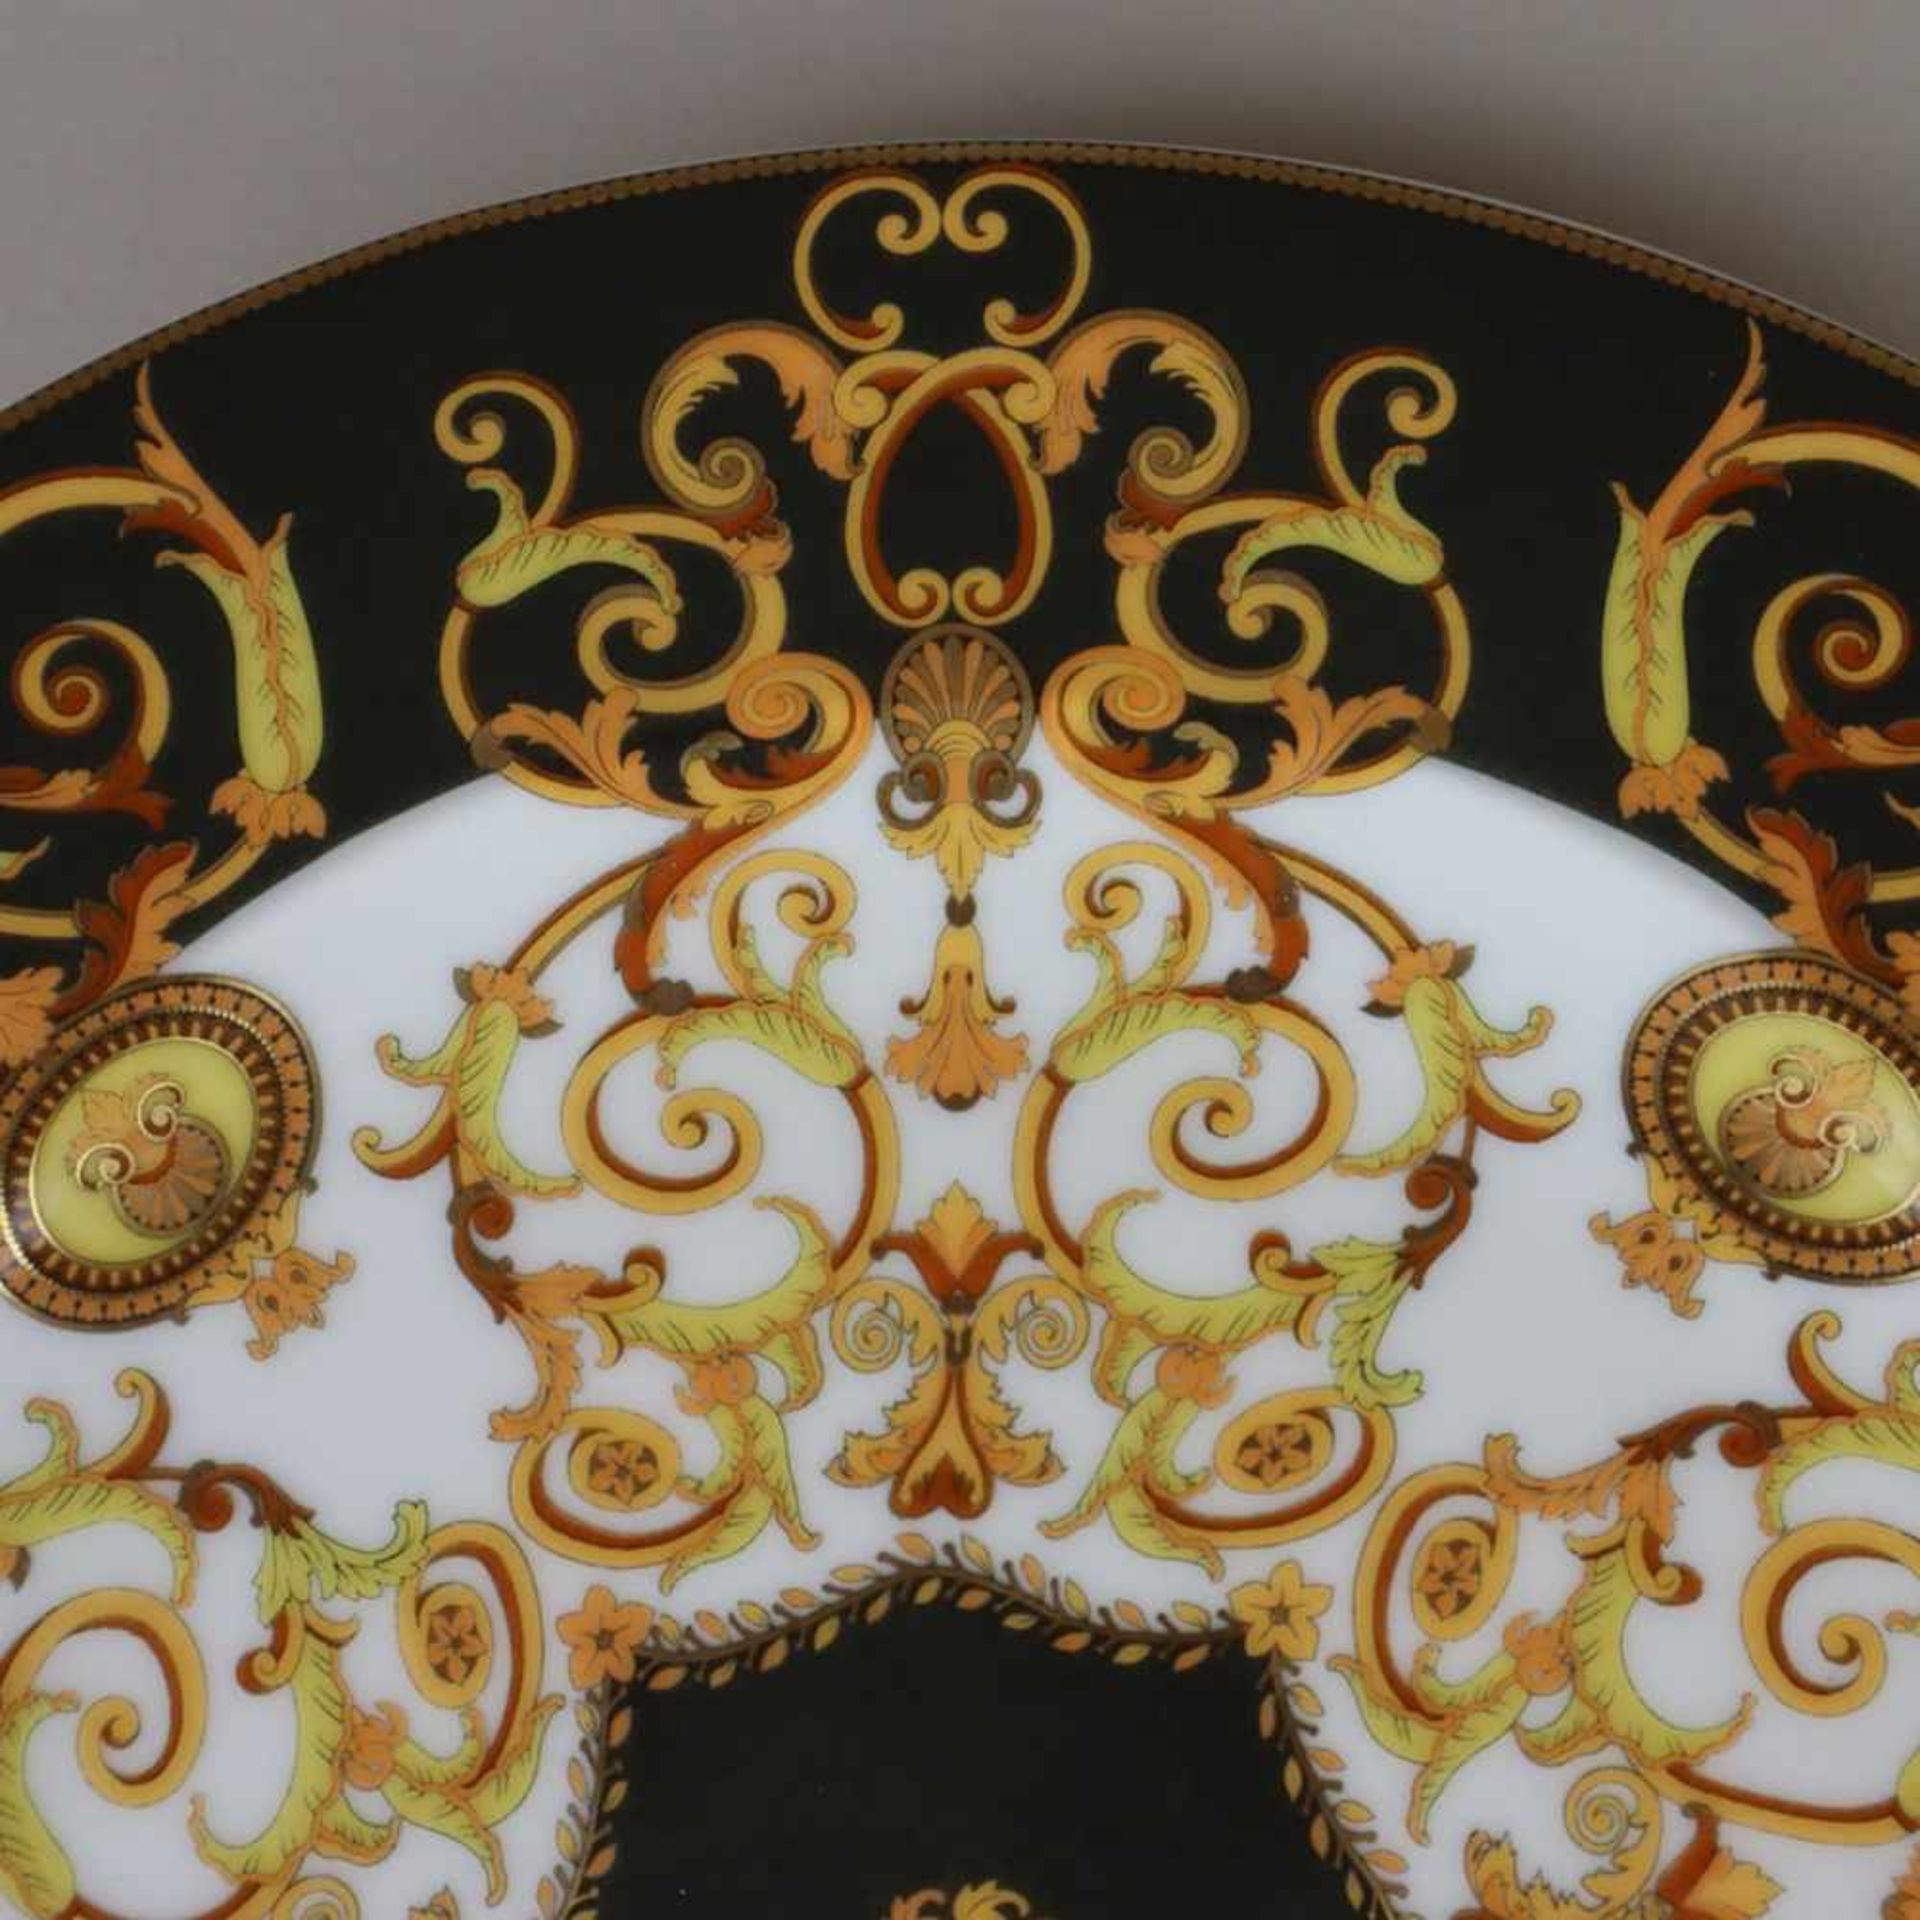 Zwei Teller "Versace Barocco" - Rosenthal, Entwurf Gianni Versace, runde Teller mit floralem - Bild 7 aus 9